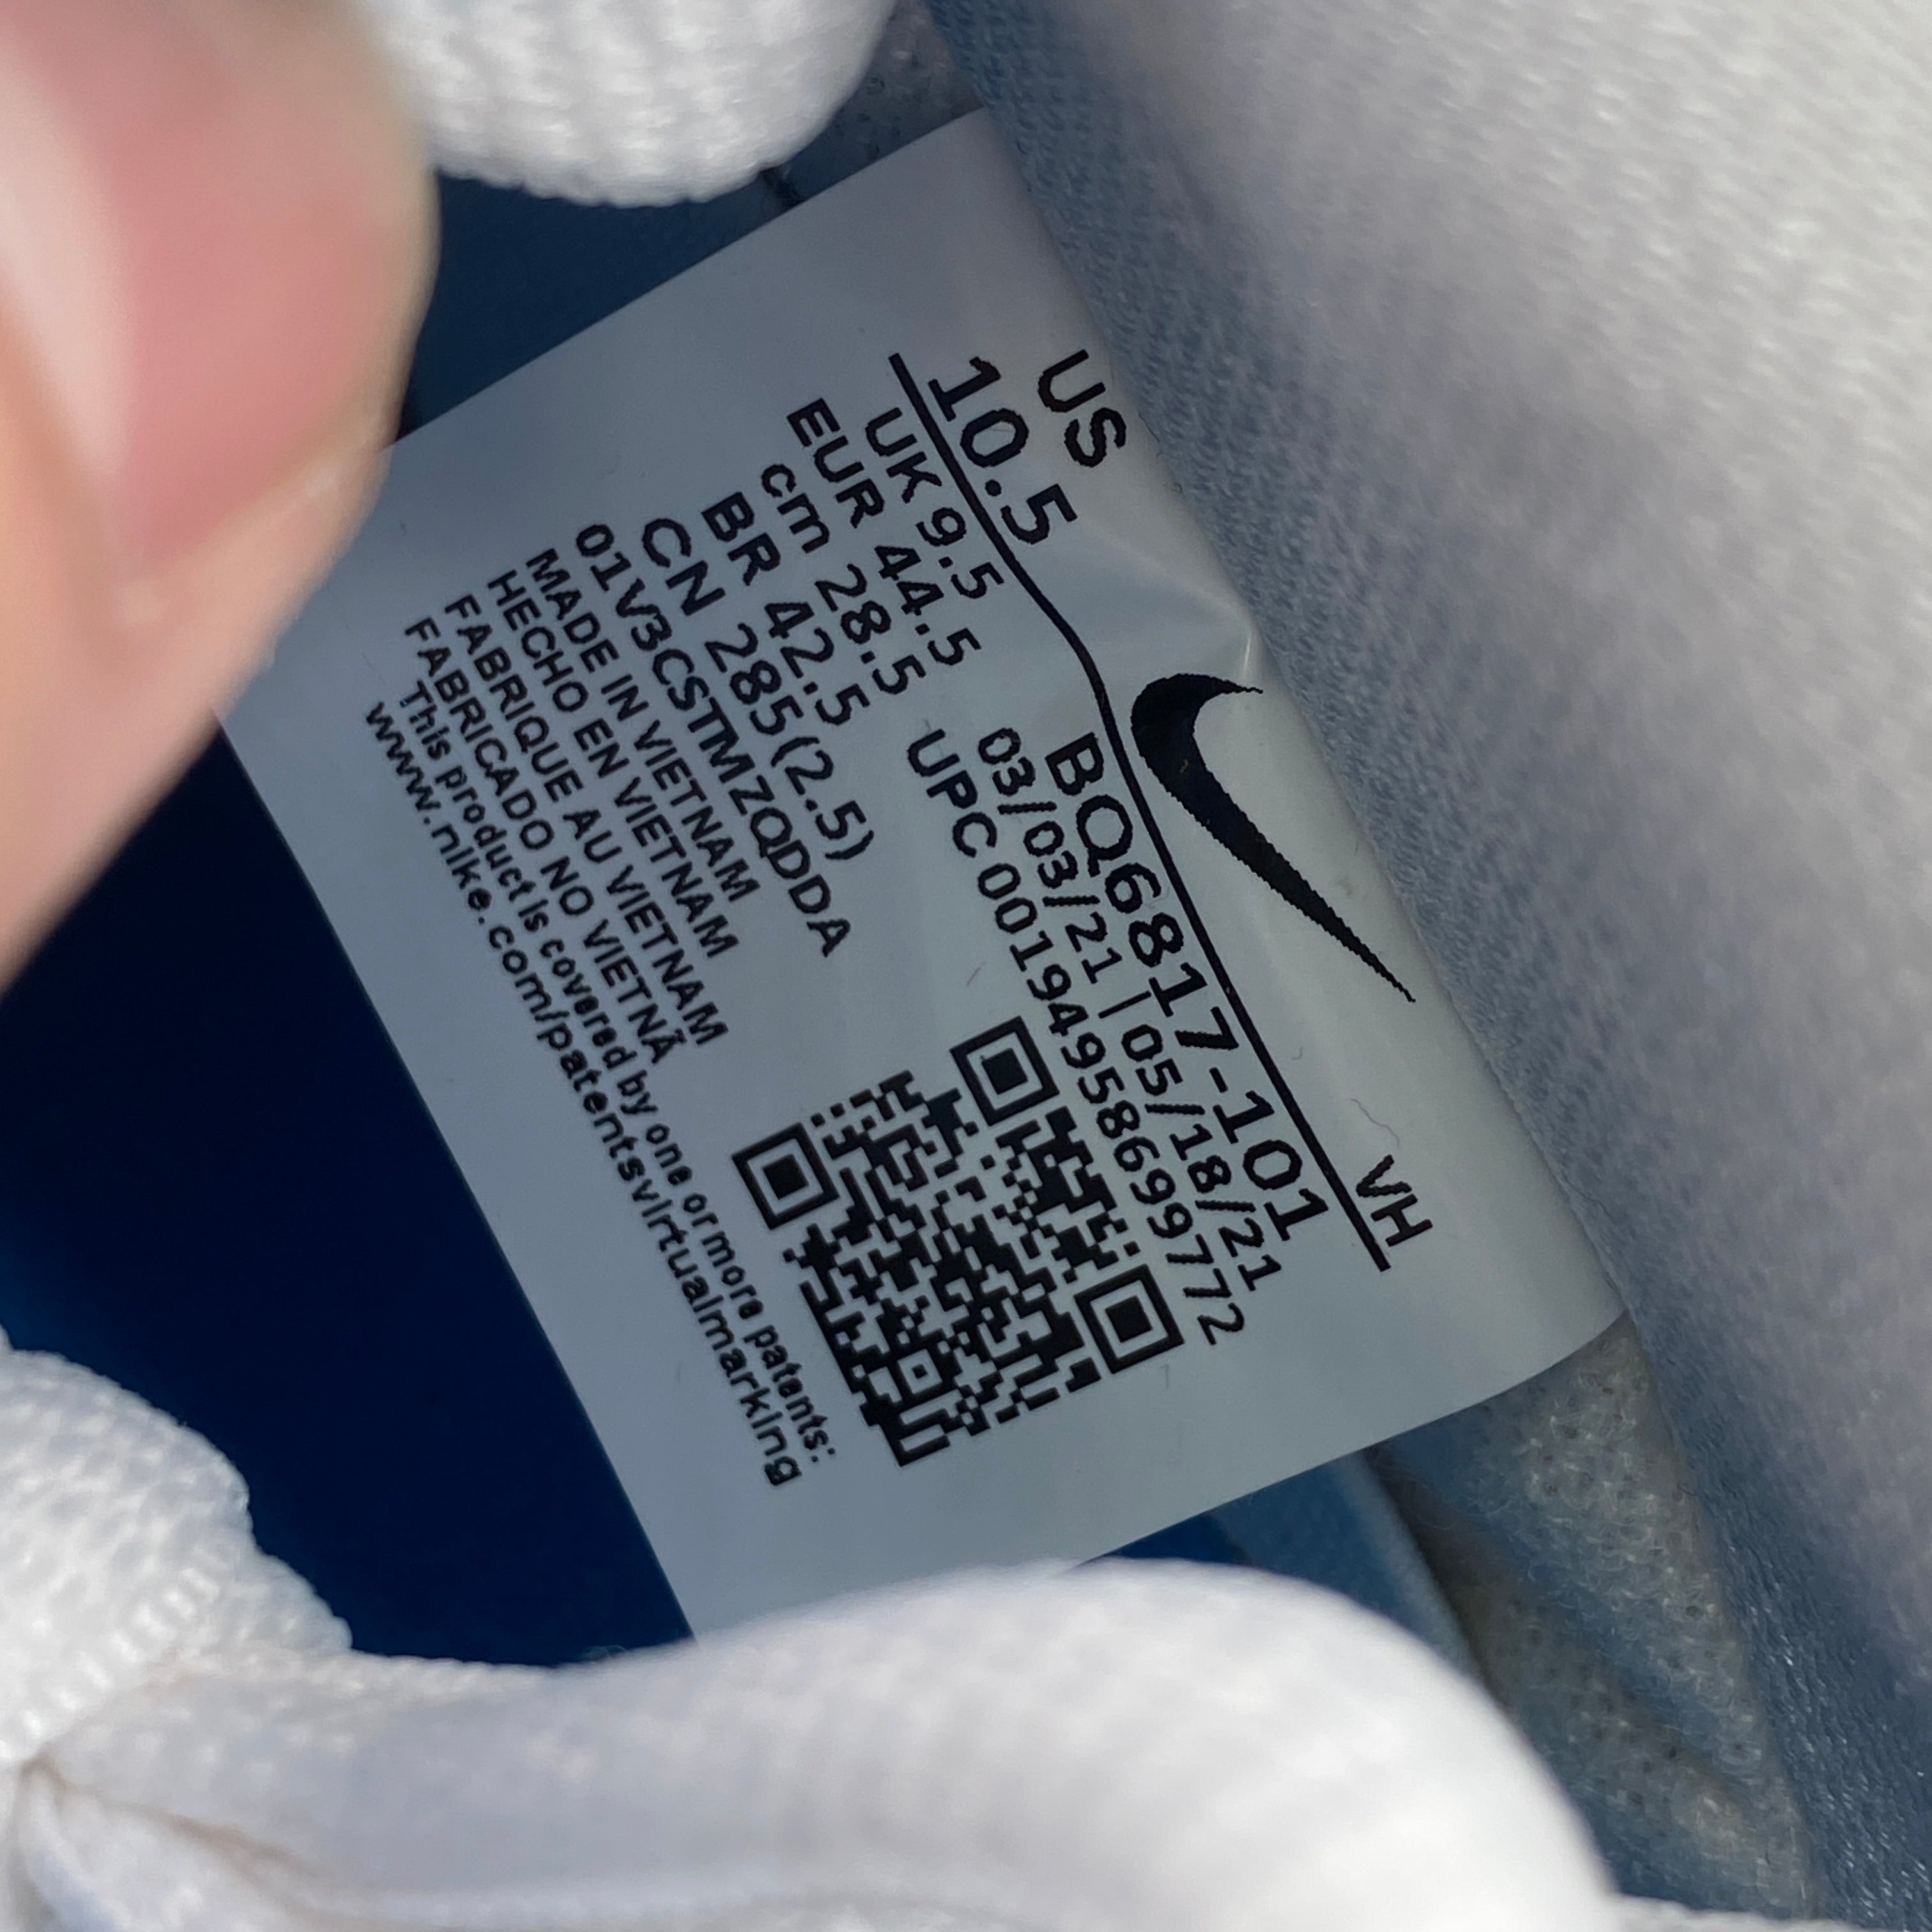 Nike SB Dunk Low Pro &quot;Laser Blue&quot; 2021 New Size 10.5